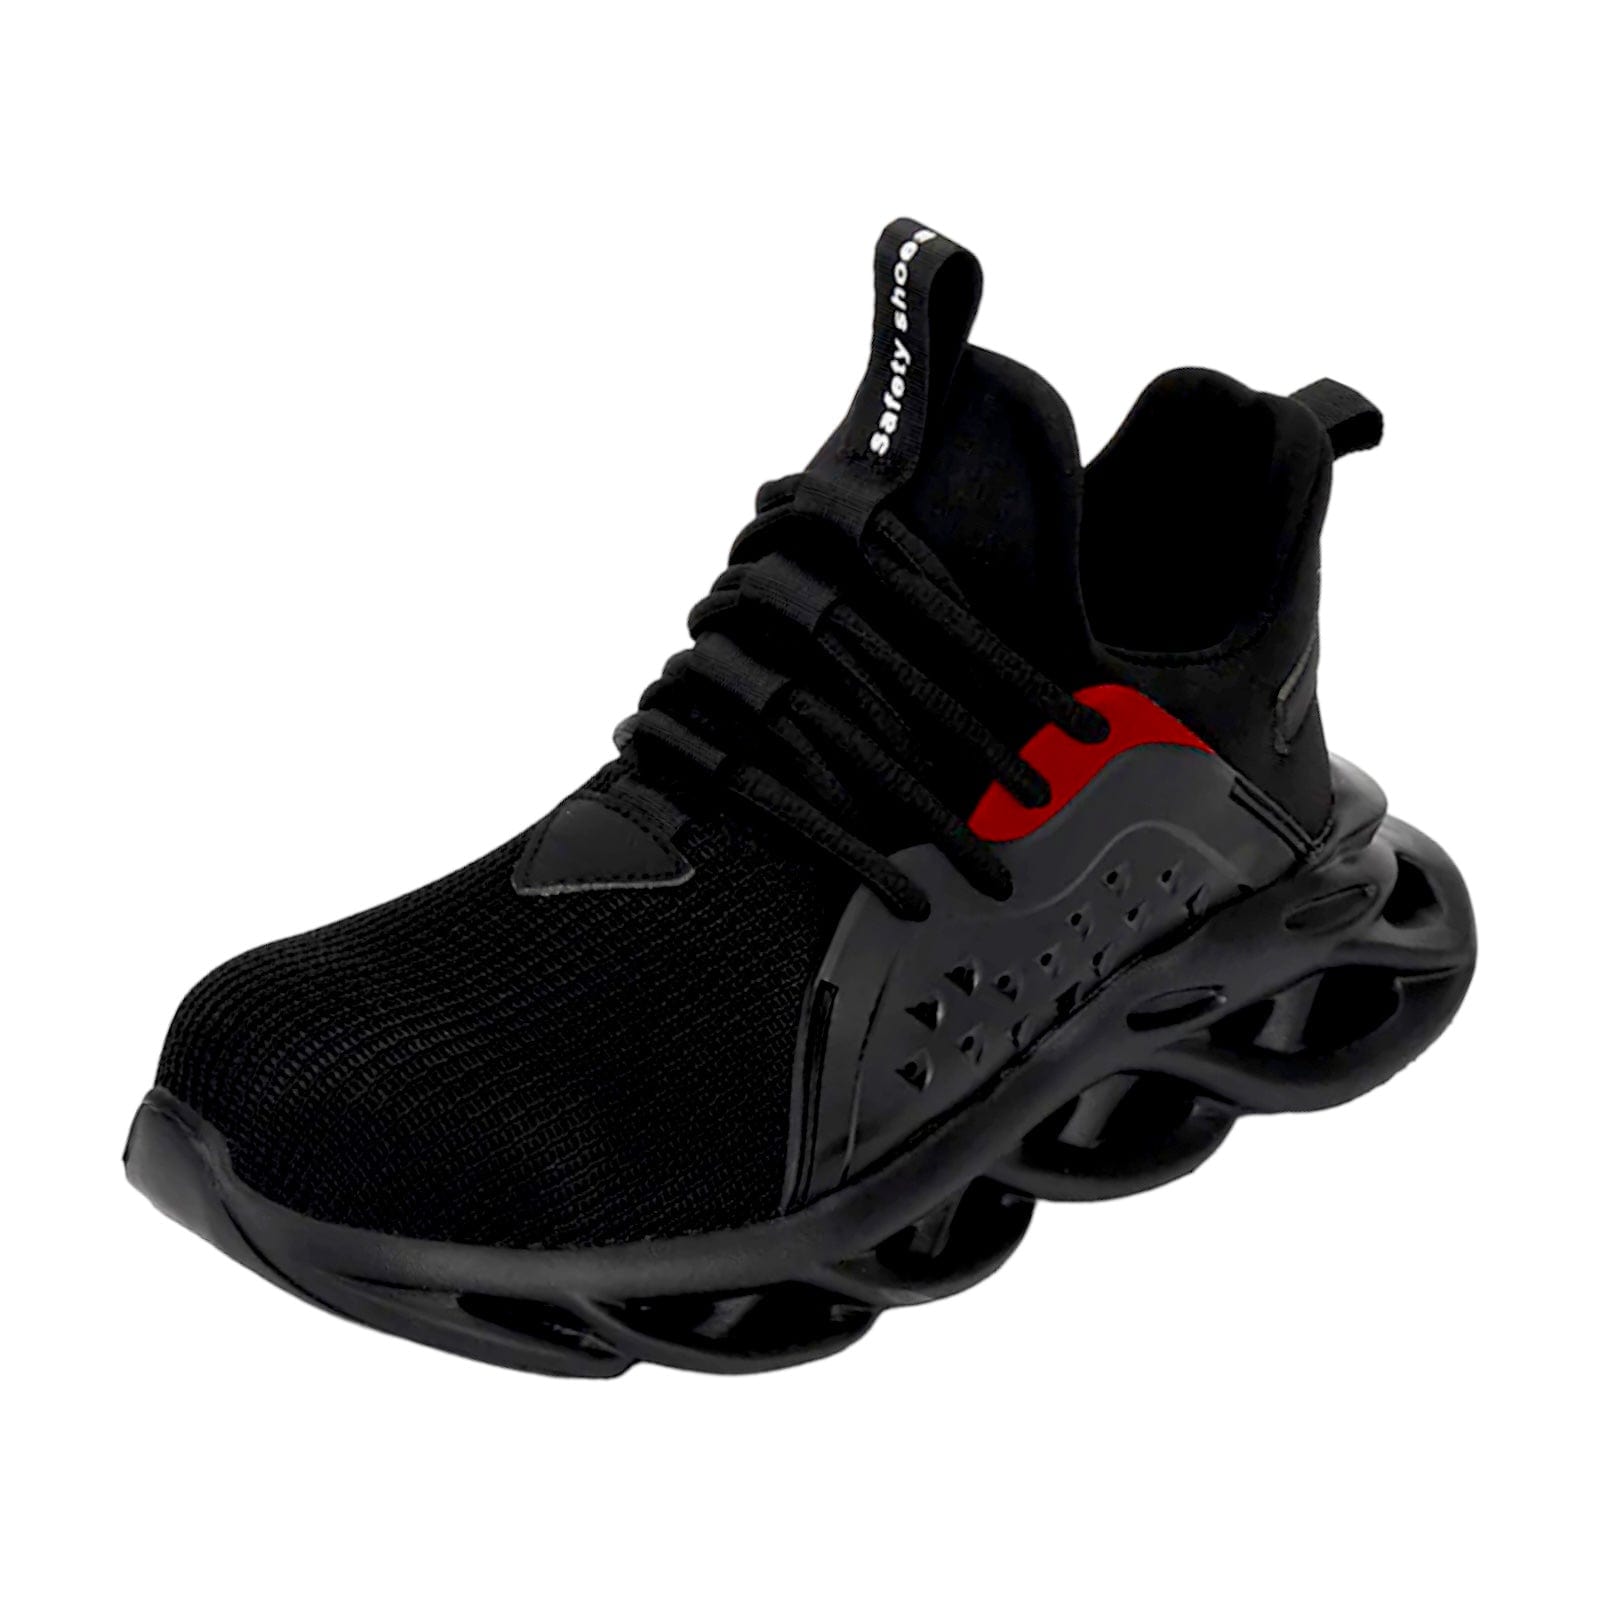 black sneakers kraken flashlander left side indestructible men shoes